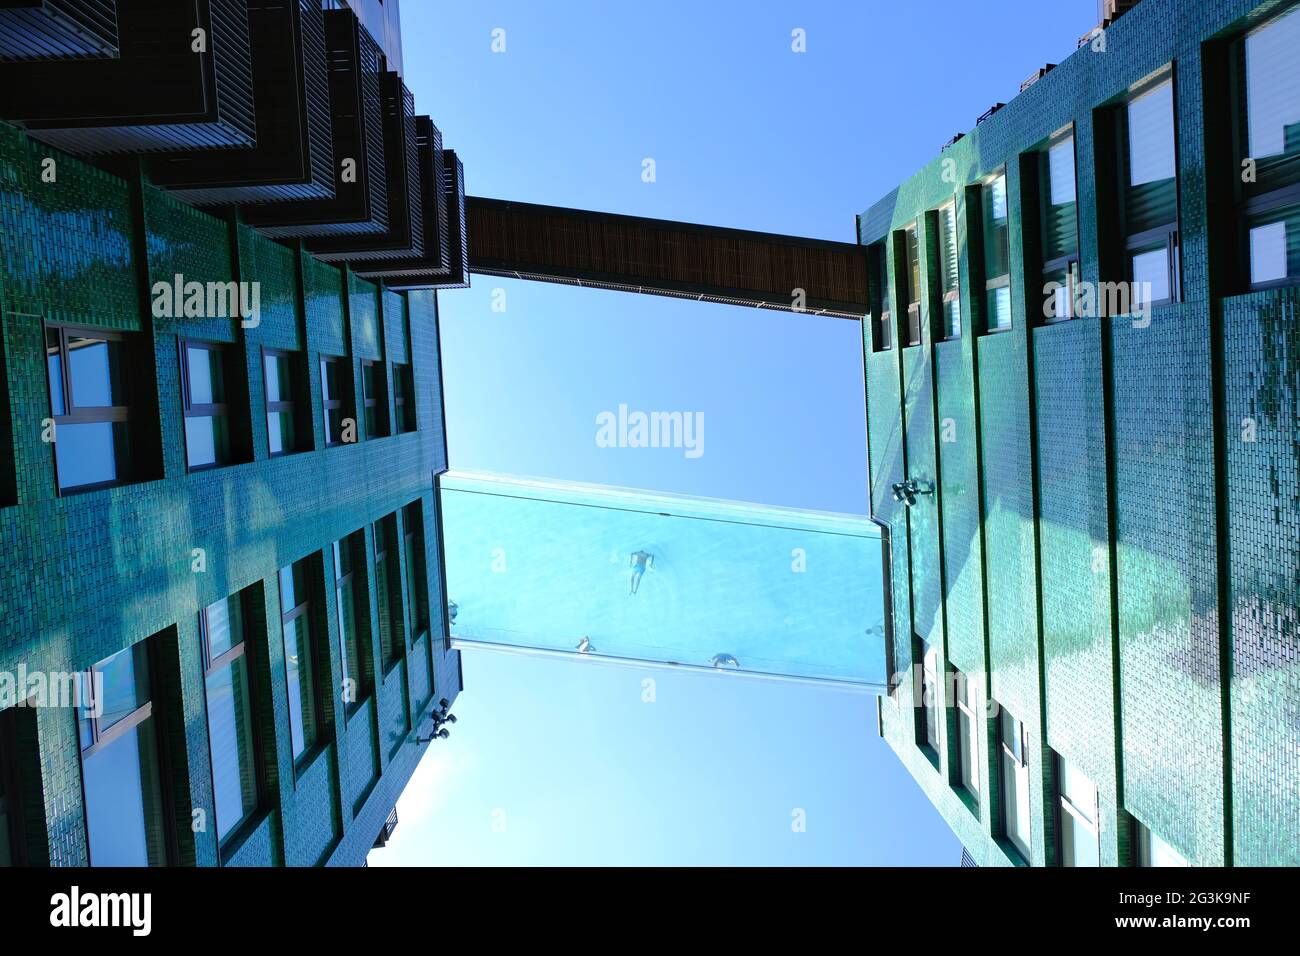 Londra, Regno Unito. Guardando verso la piscina Sky di nuova apertura presso Embassy Gardens a Nine Elms, dove i nuotatori possono ammirare viste da 115 piedi in aria. Foto Stock